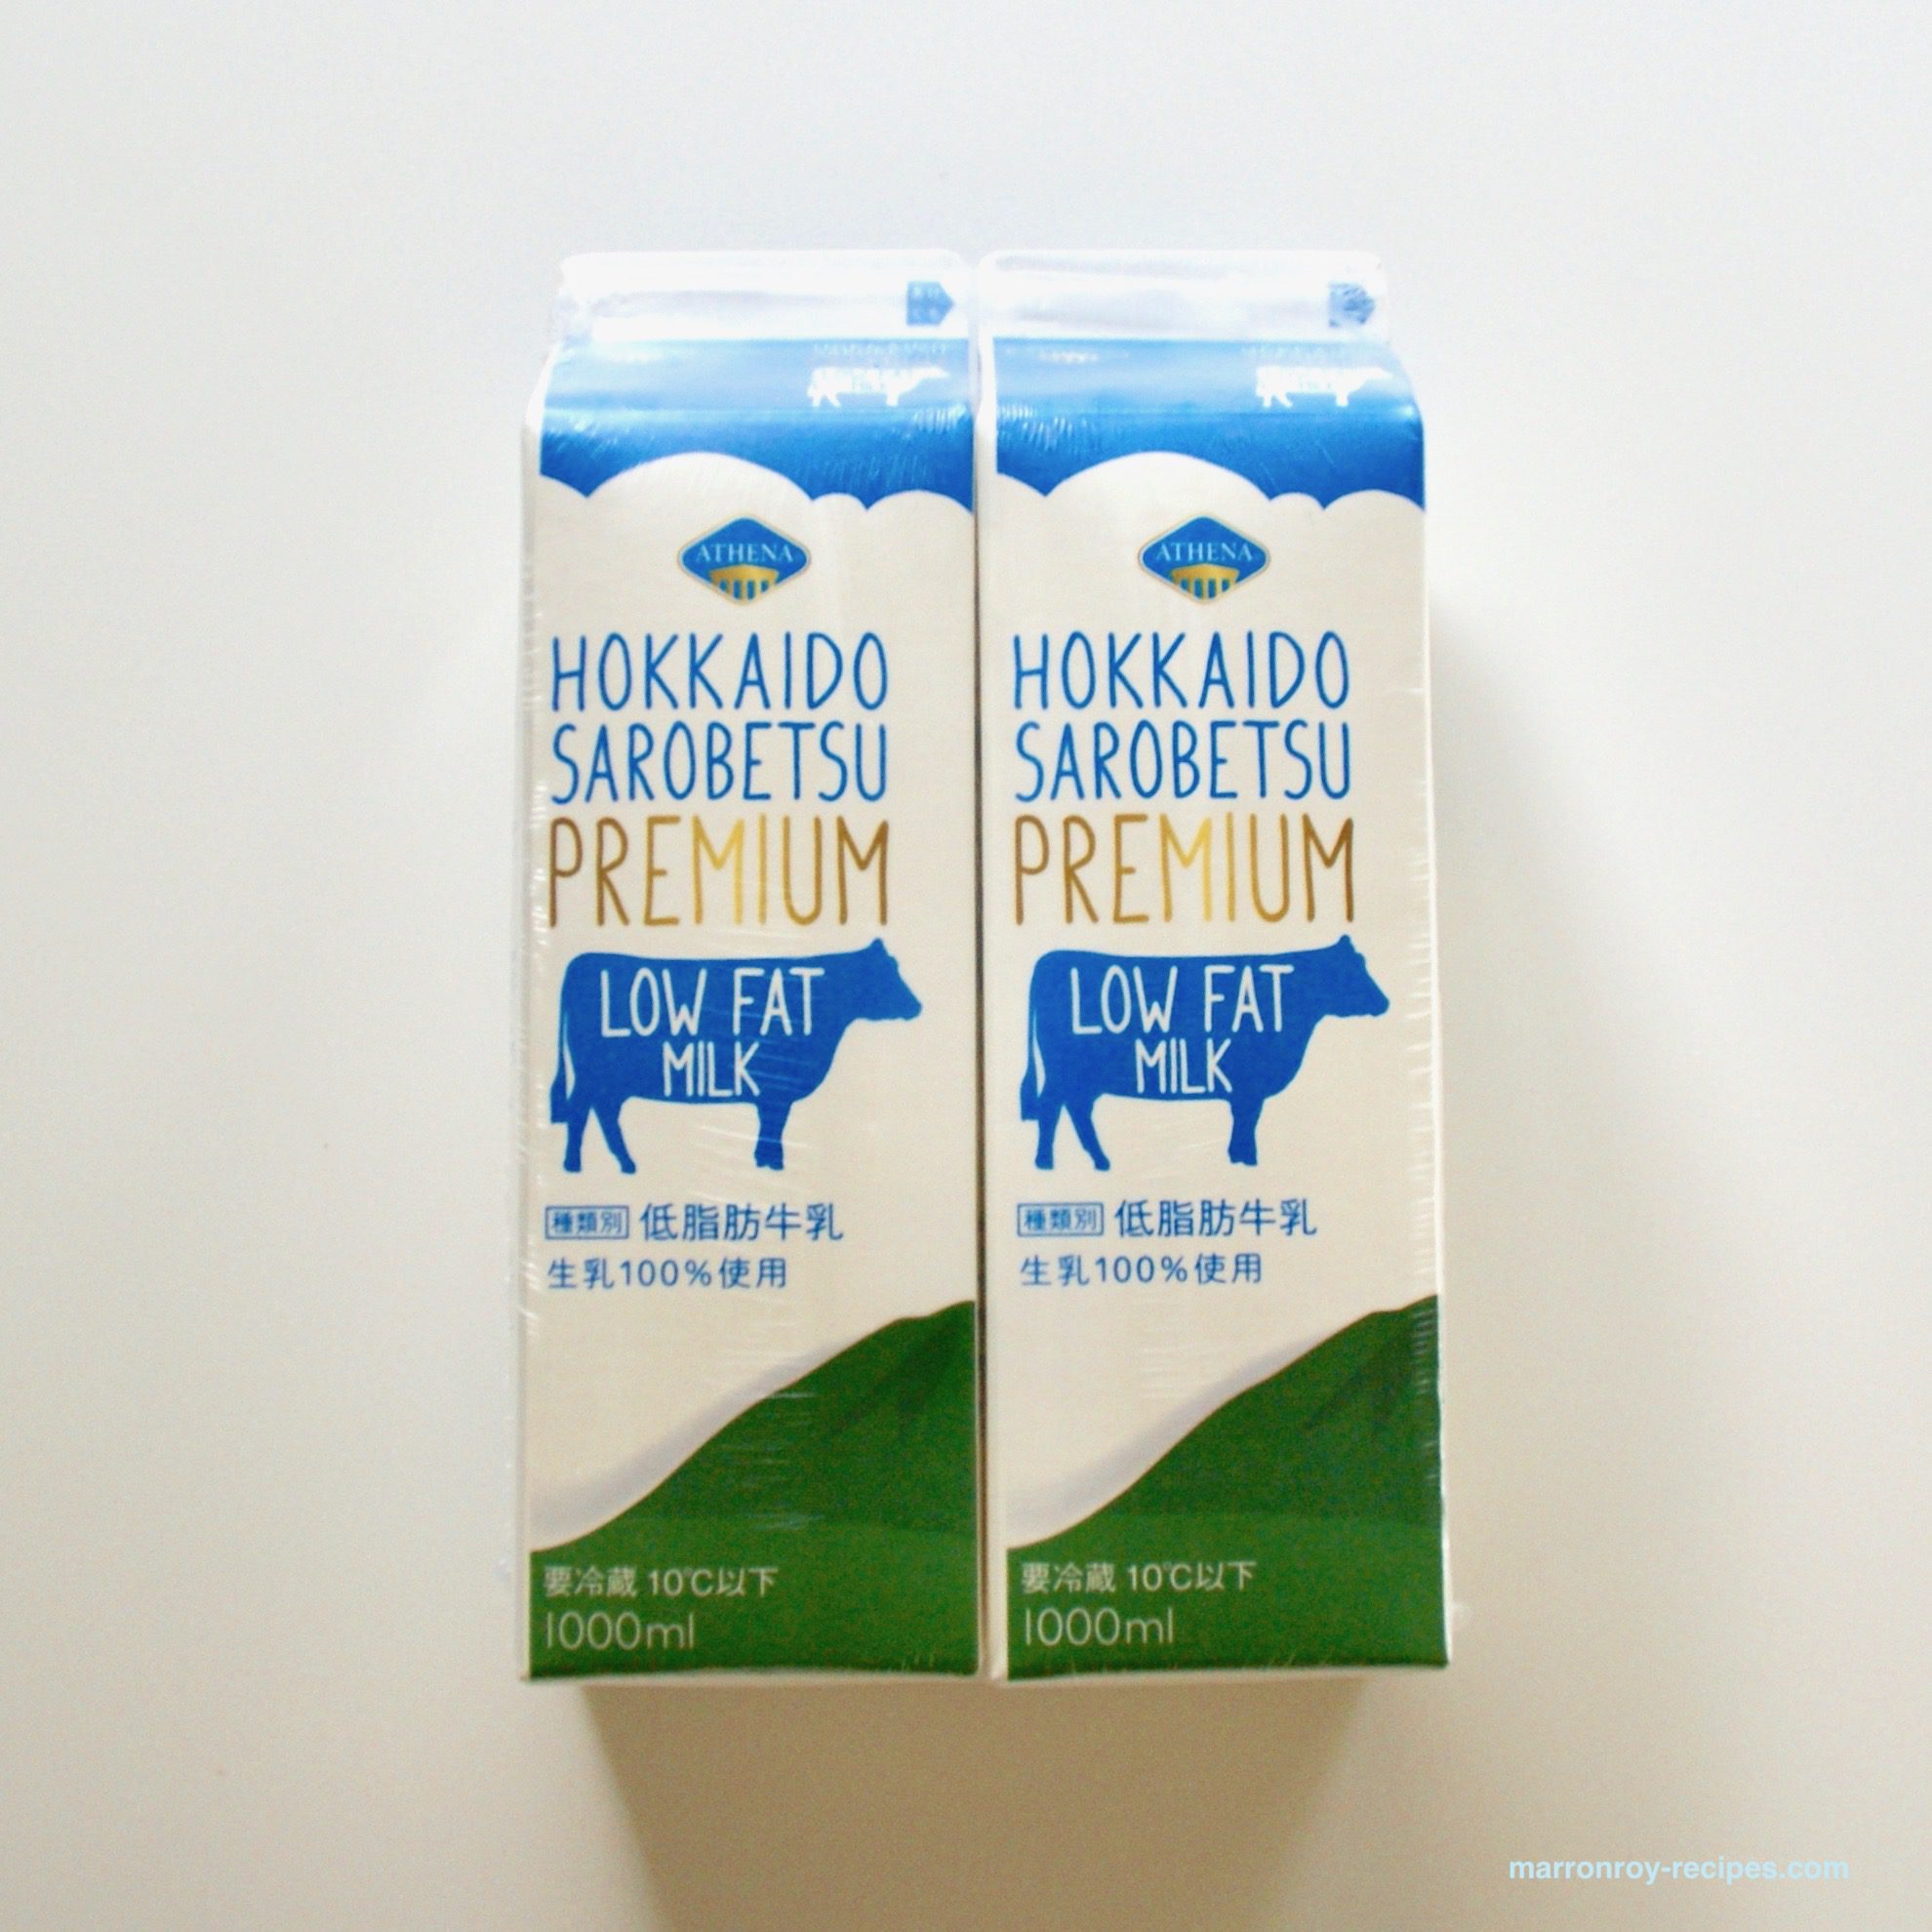 コストコの牛乳“ATHENA（アテナ）北海道サロベツプレミアムミルク & ローファットミルク”